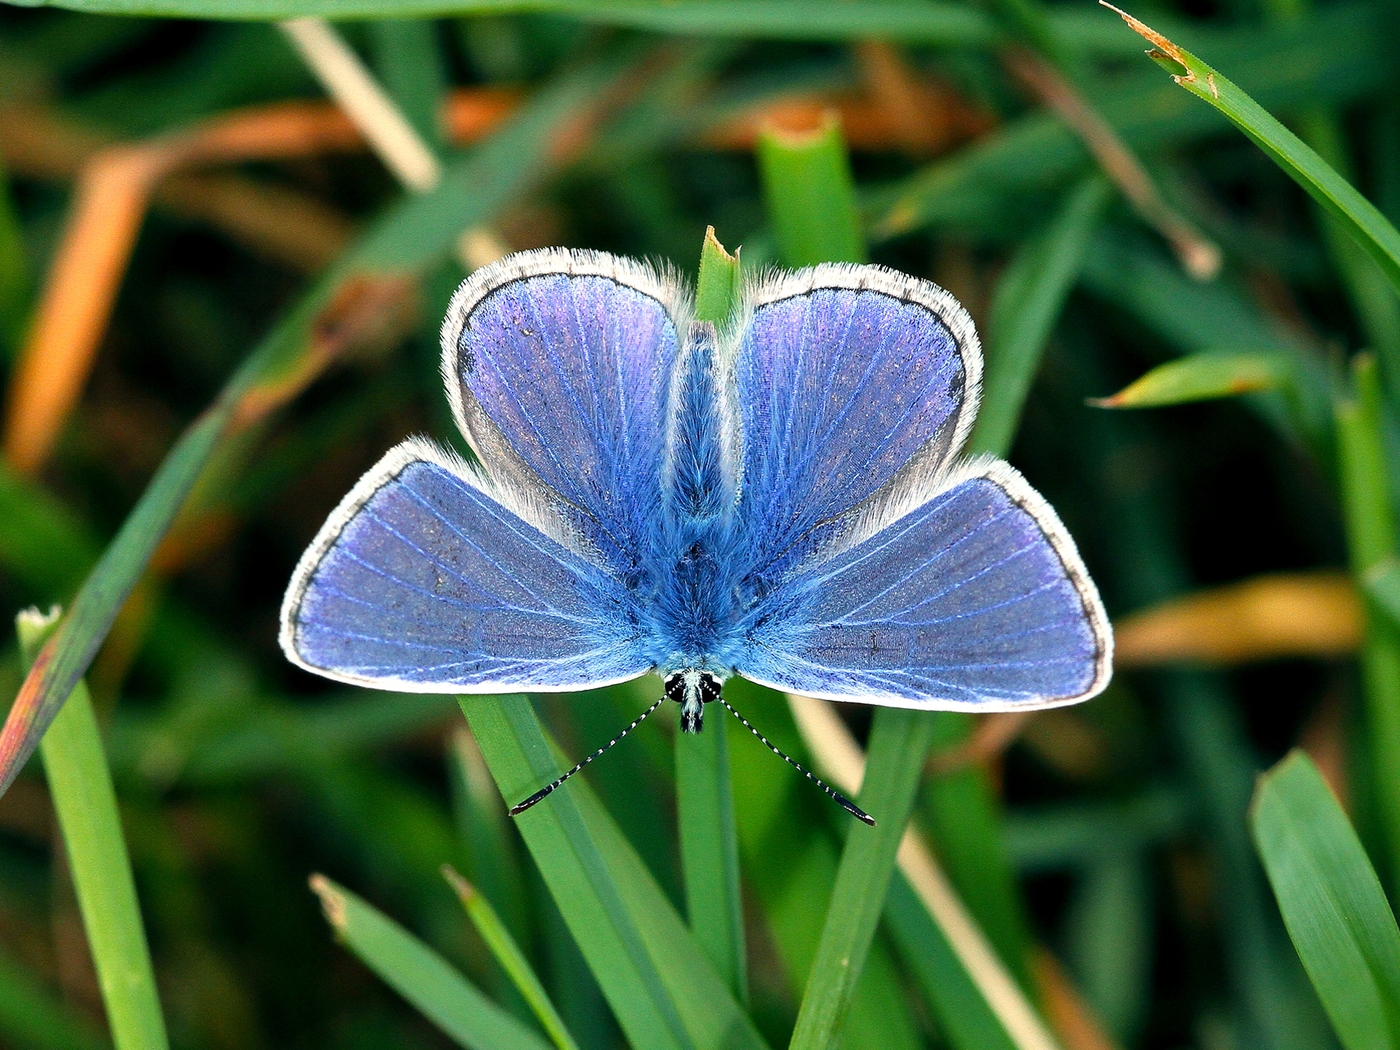 Картинка: Бабока, крылья, голубые, трава, зелень